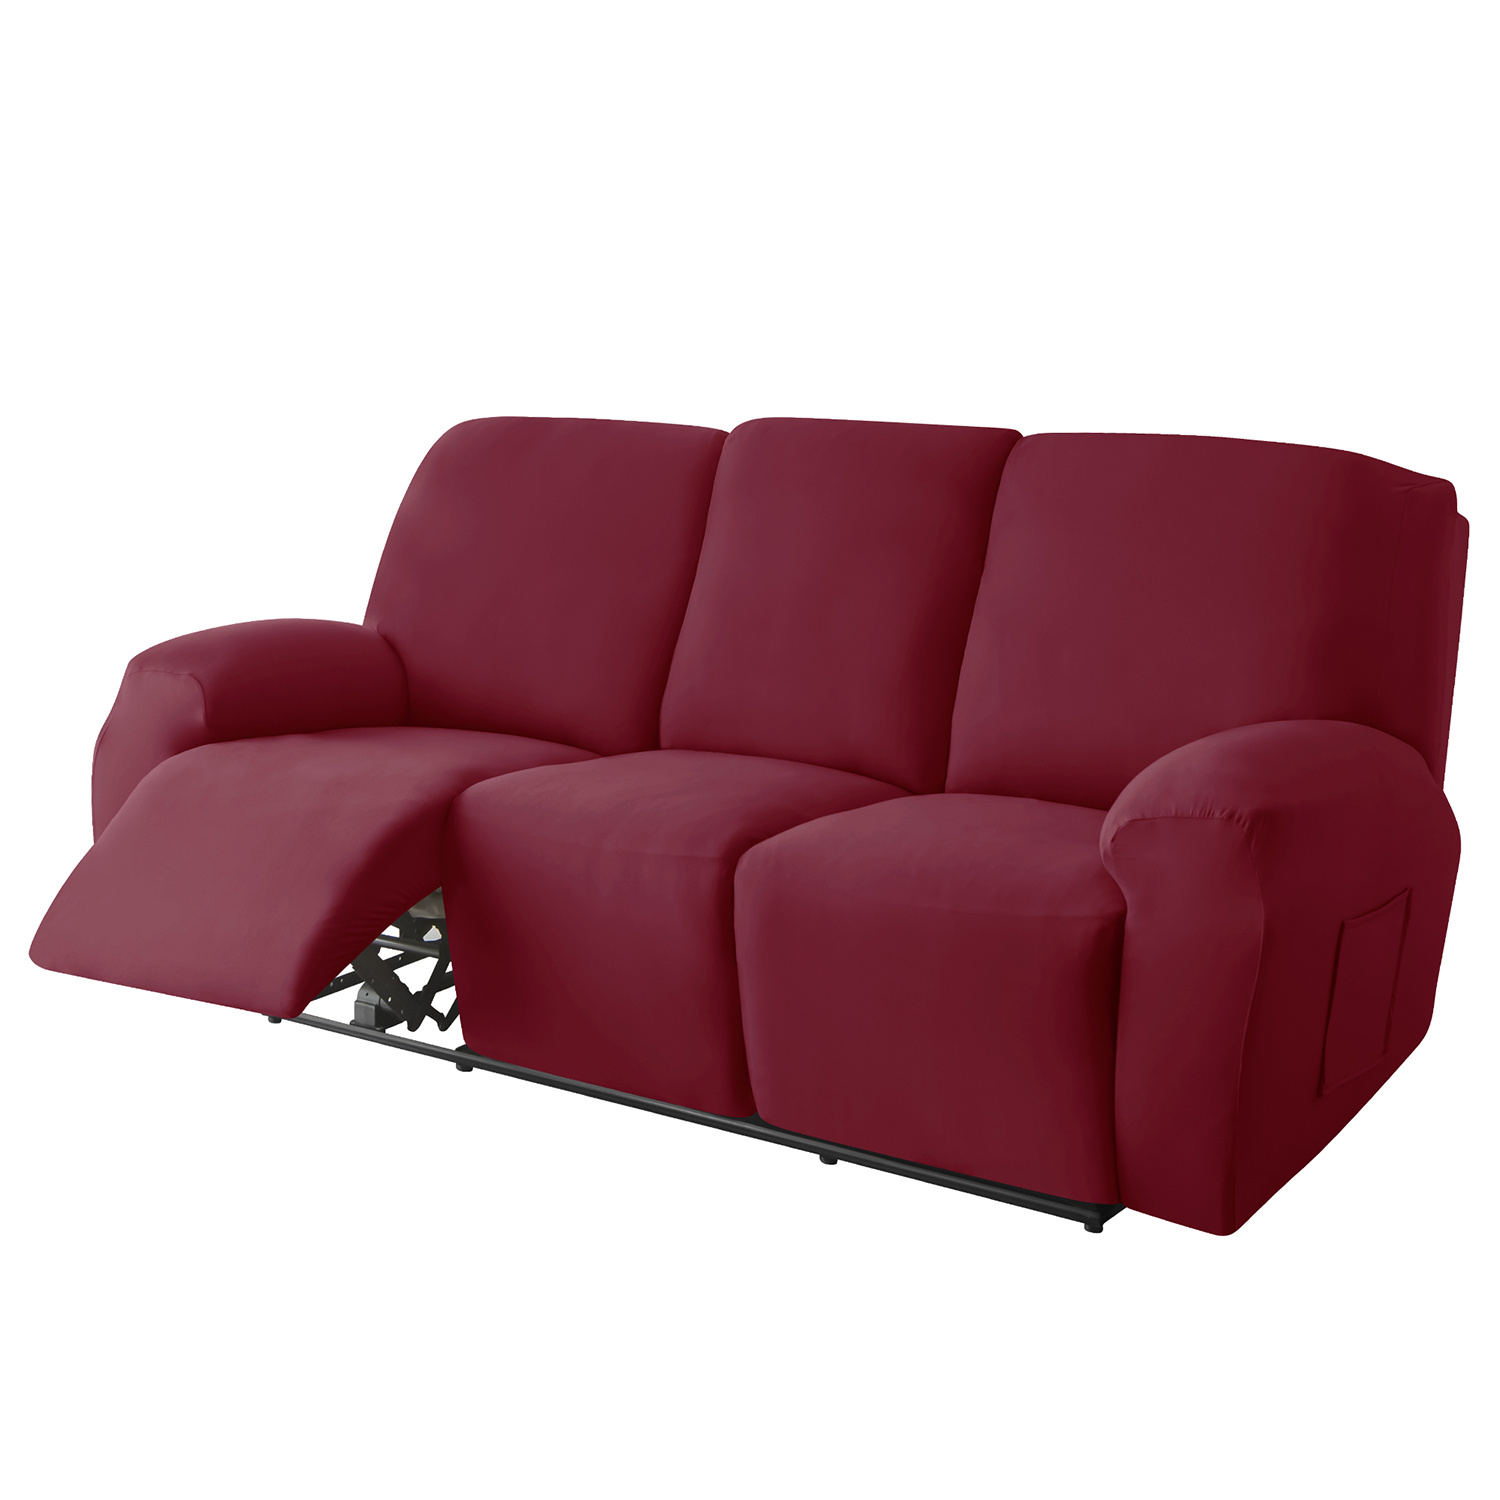 Fundas elásticas para sillón reclinable de 1, 2, 3 asientos, 4/6/8 piezas,  funda de terciopelo suave para sillón reclinable, fundas antideslizantes